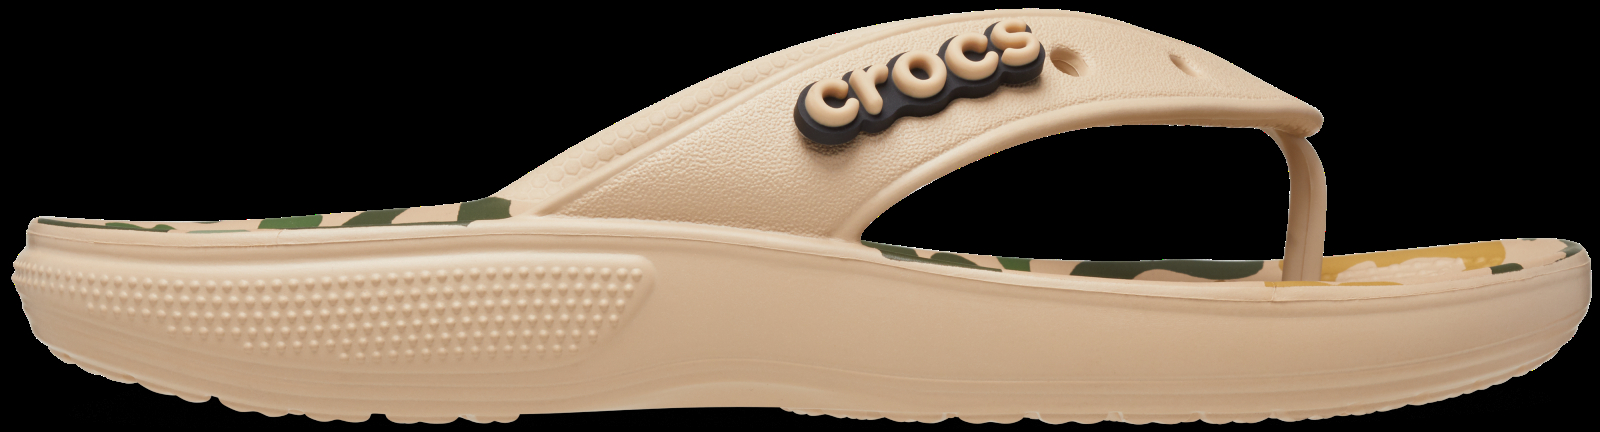 Dámske žabky Crocs CLASSIC Camo béžová 36-37